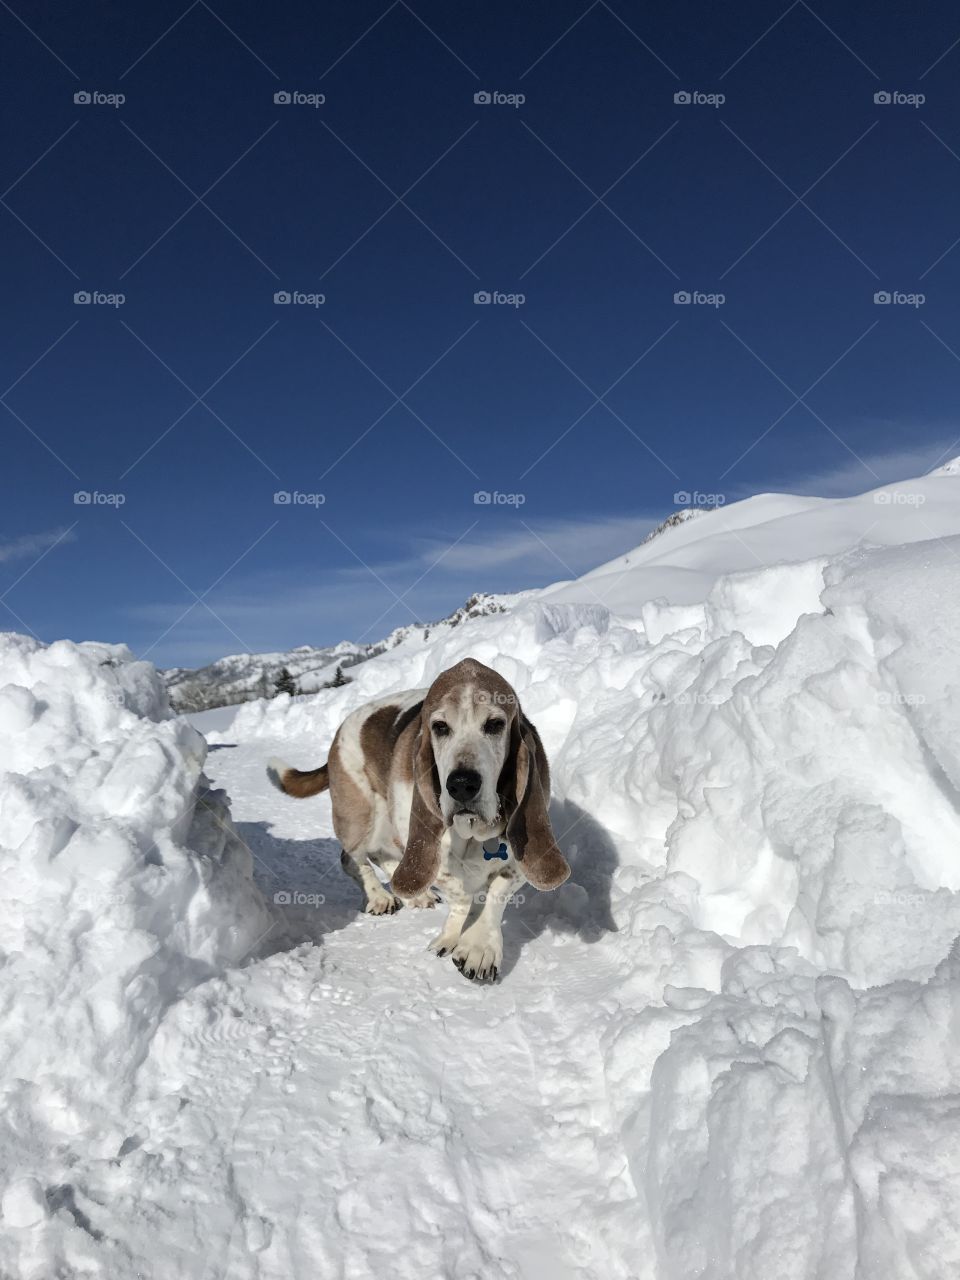 Snowy Walk with basset hound 